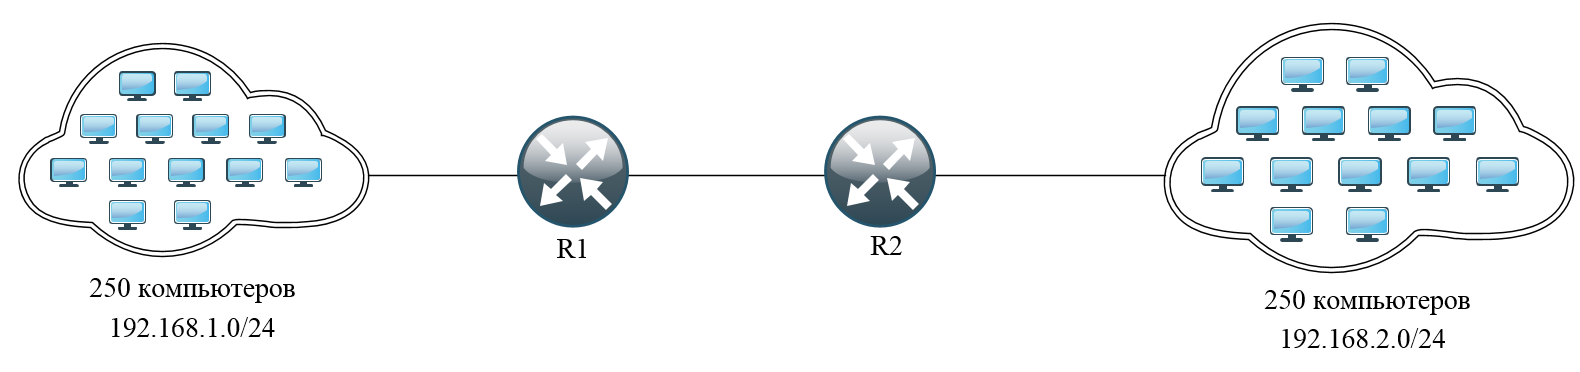 Реферат по теме Конфигурирования программного обеспечения алгоритма OSPF на маршрутизаторе